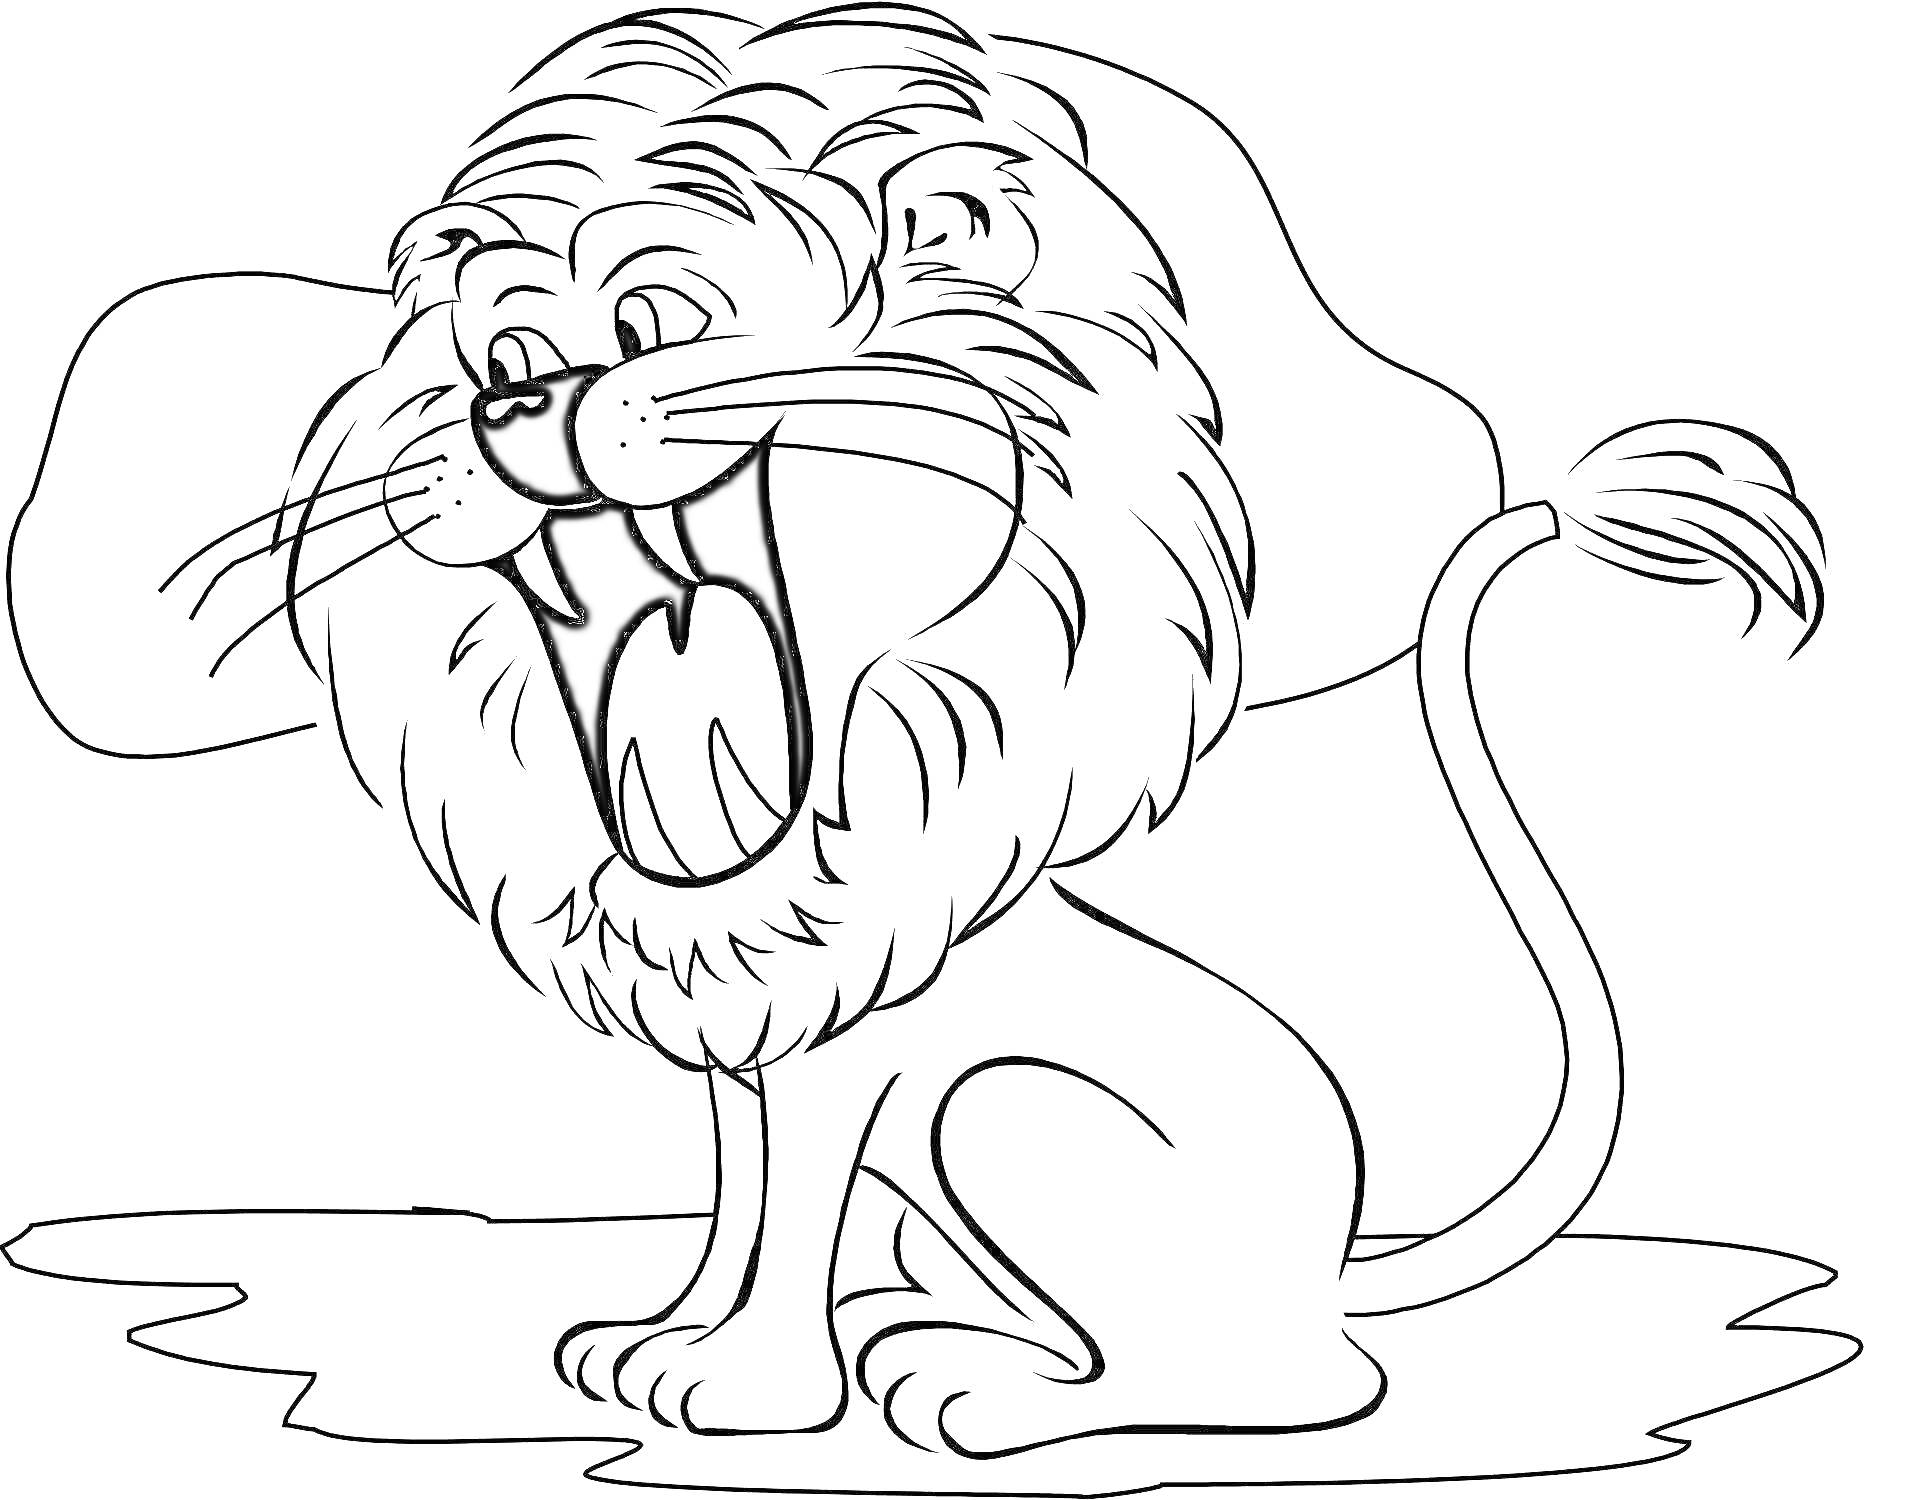 Раскраска с изображением льва с открытой пастью, сидящего на земле